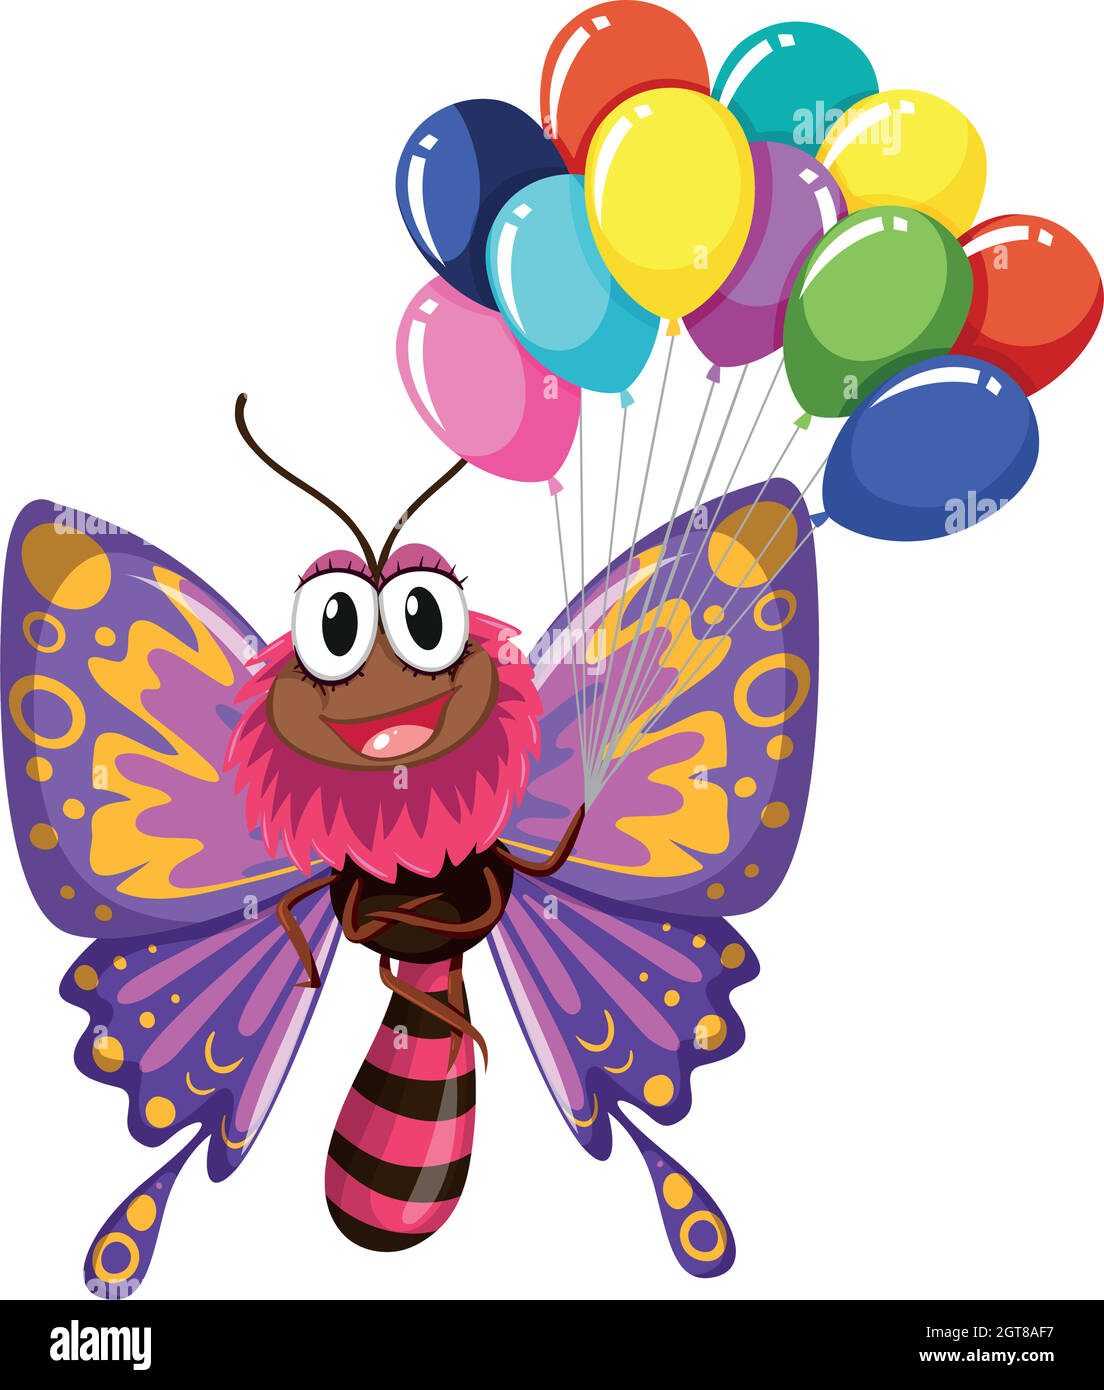 Butterfly balloons immagini e fotografie stock ad alta risoluzione - Alamy